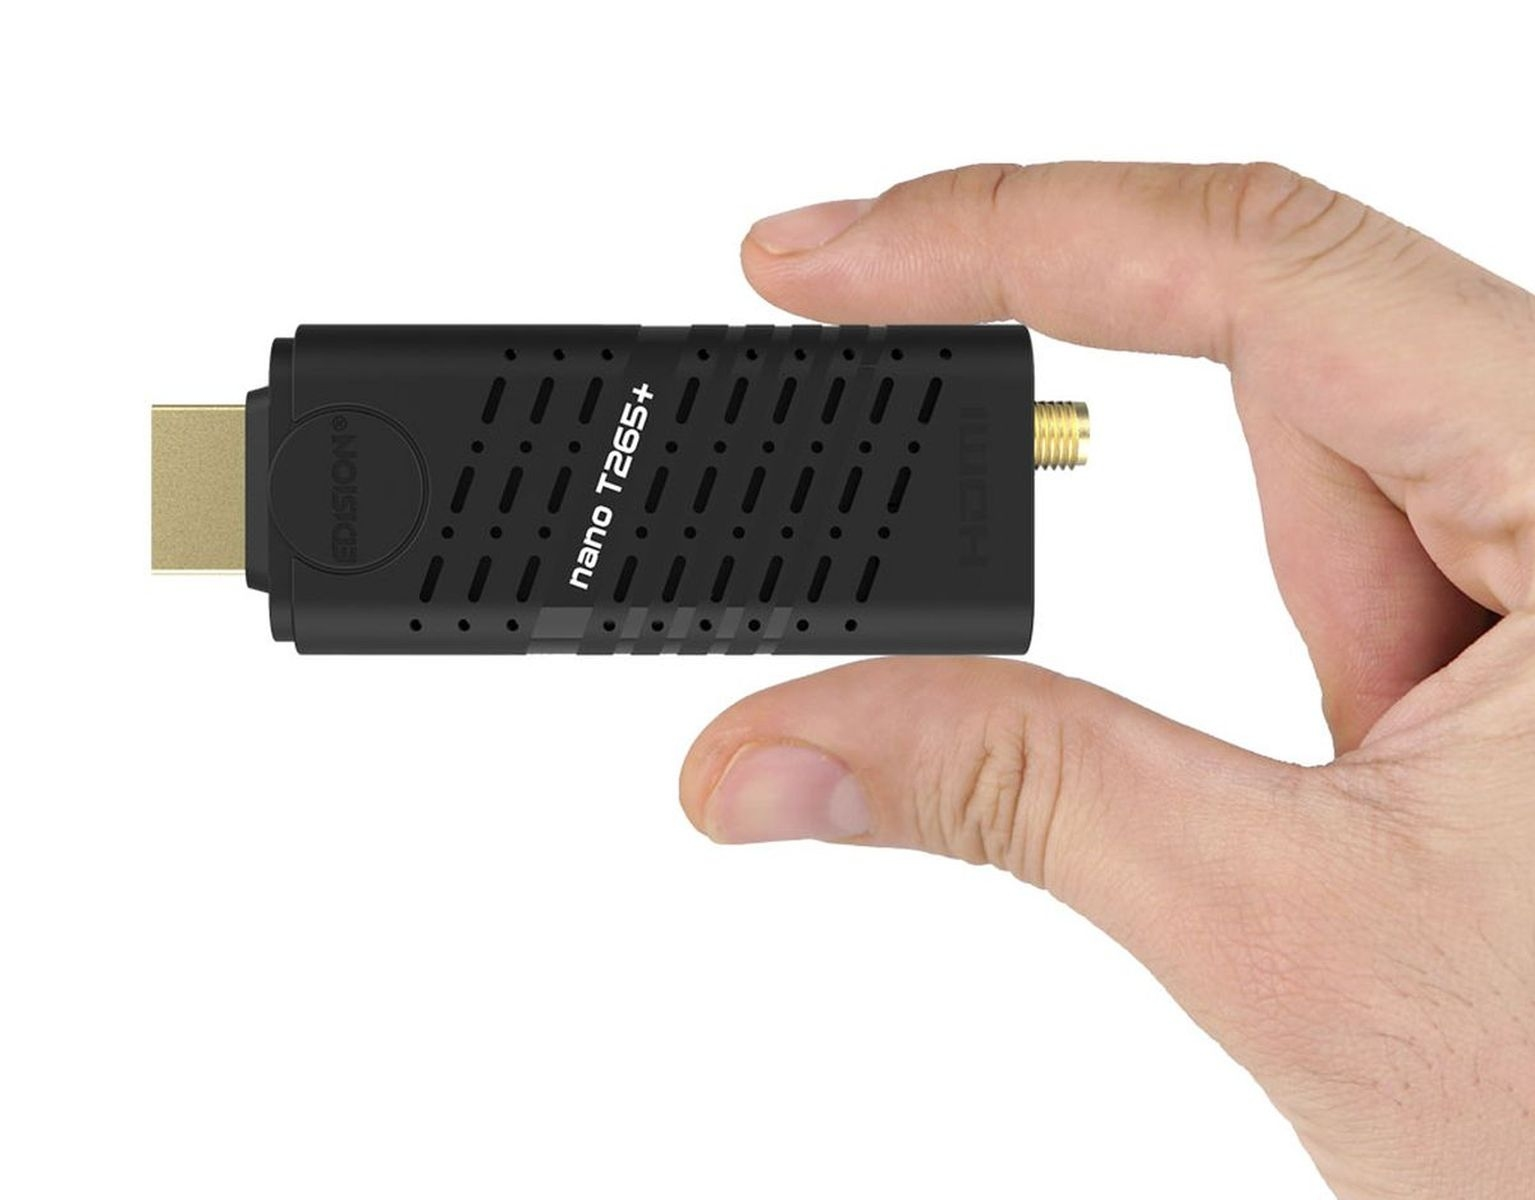 Kabel T265+ EDISION HD DVB-T2 Kabel-Receiver Tuner, Nano und PVR-Funktion=optional, DVB-T, terrestrisch (HDTV, DVB-C, schwarz) für (H.264), Twin